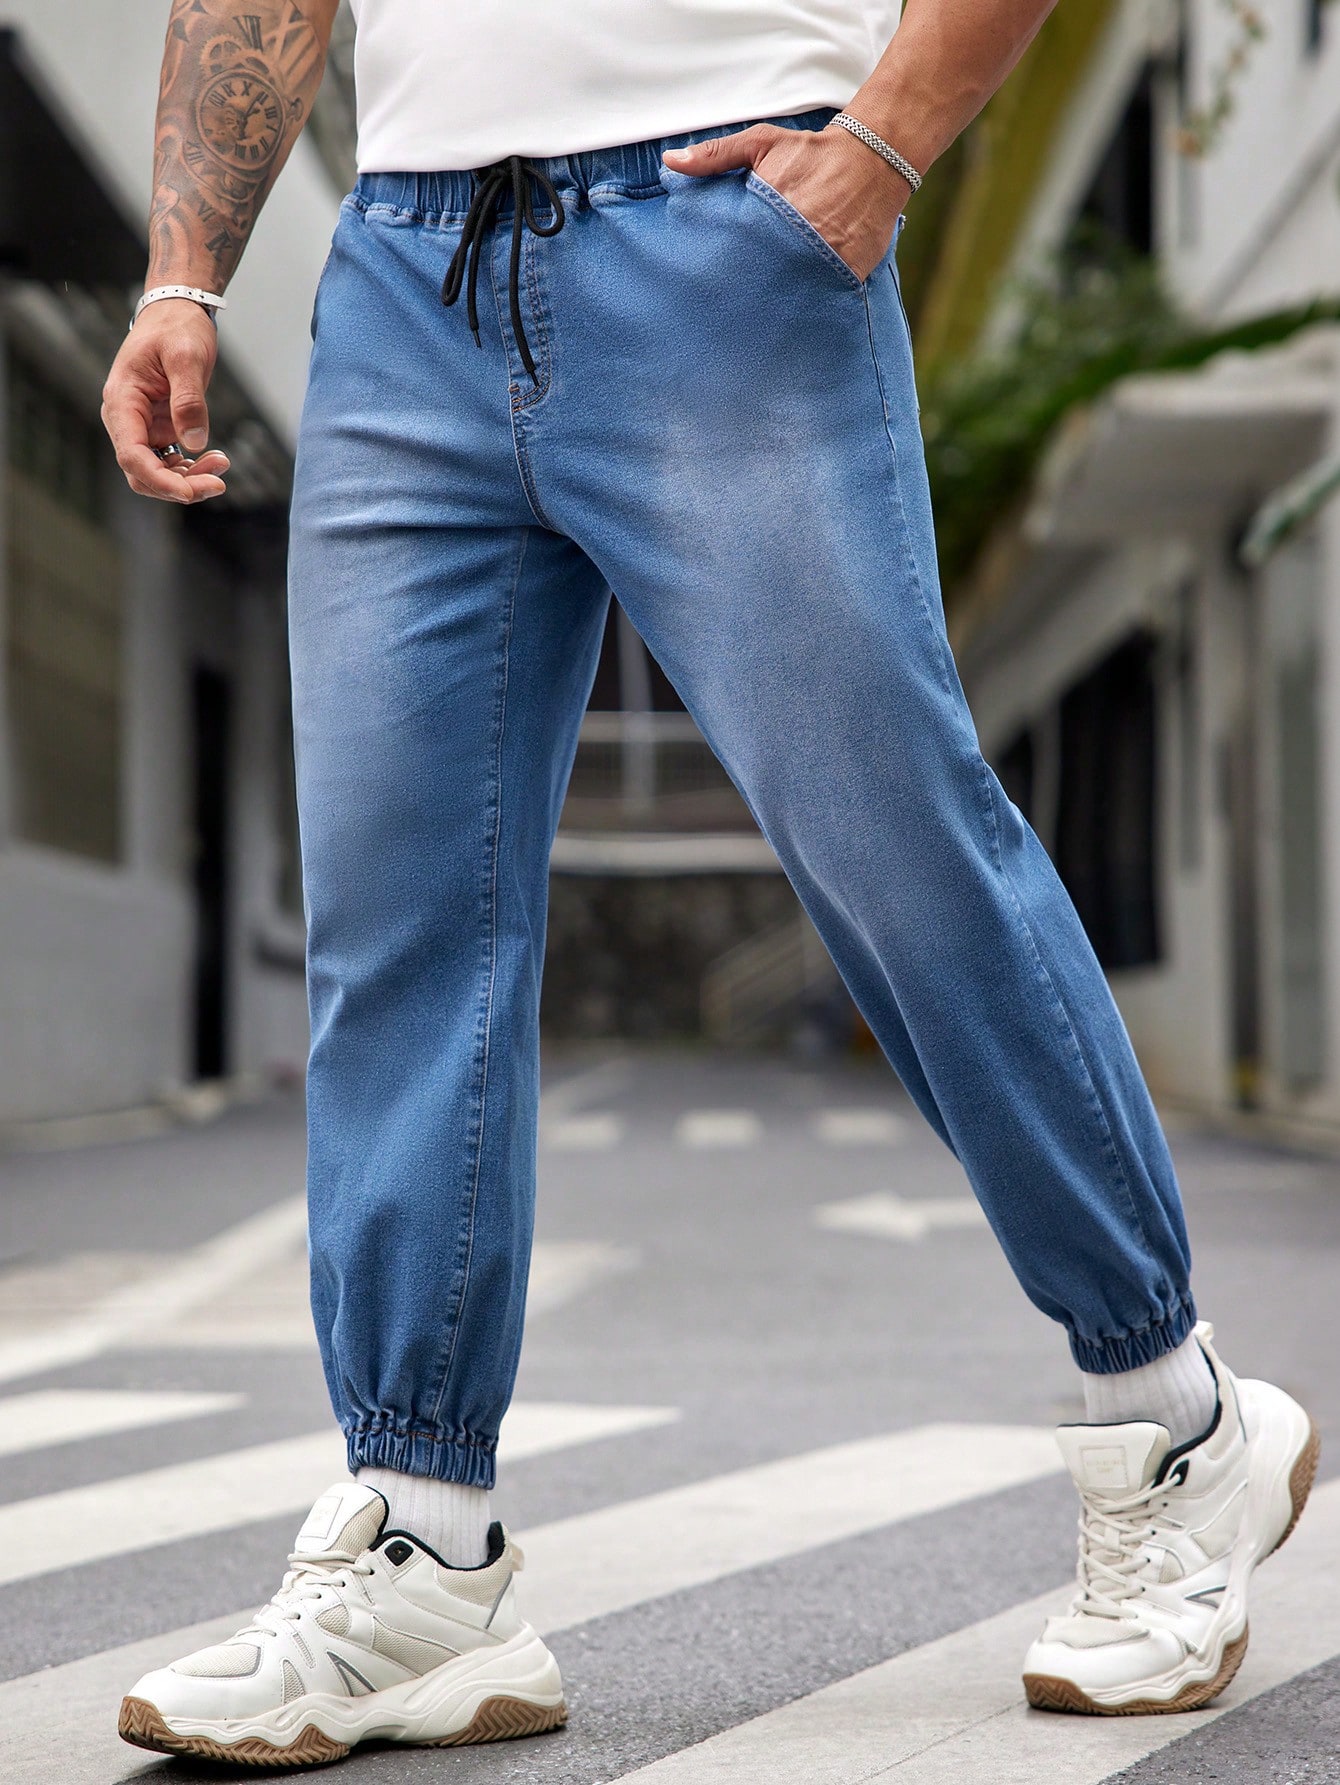 Мужские джинсовые джинсы больших размеров Manfinity Homme с эластичной резинкой на талии и манжетах, синий